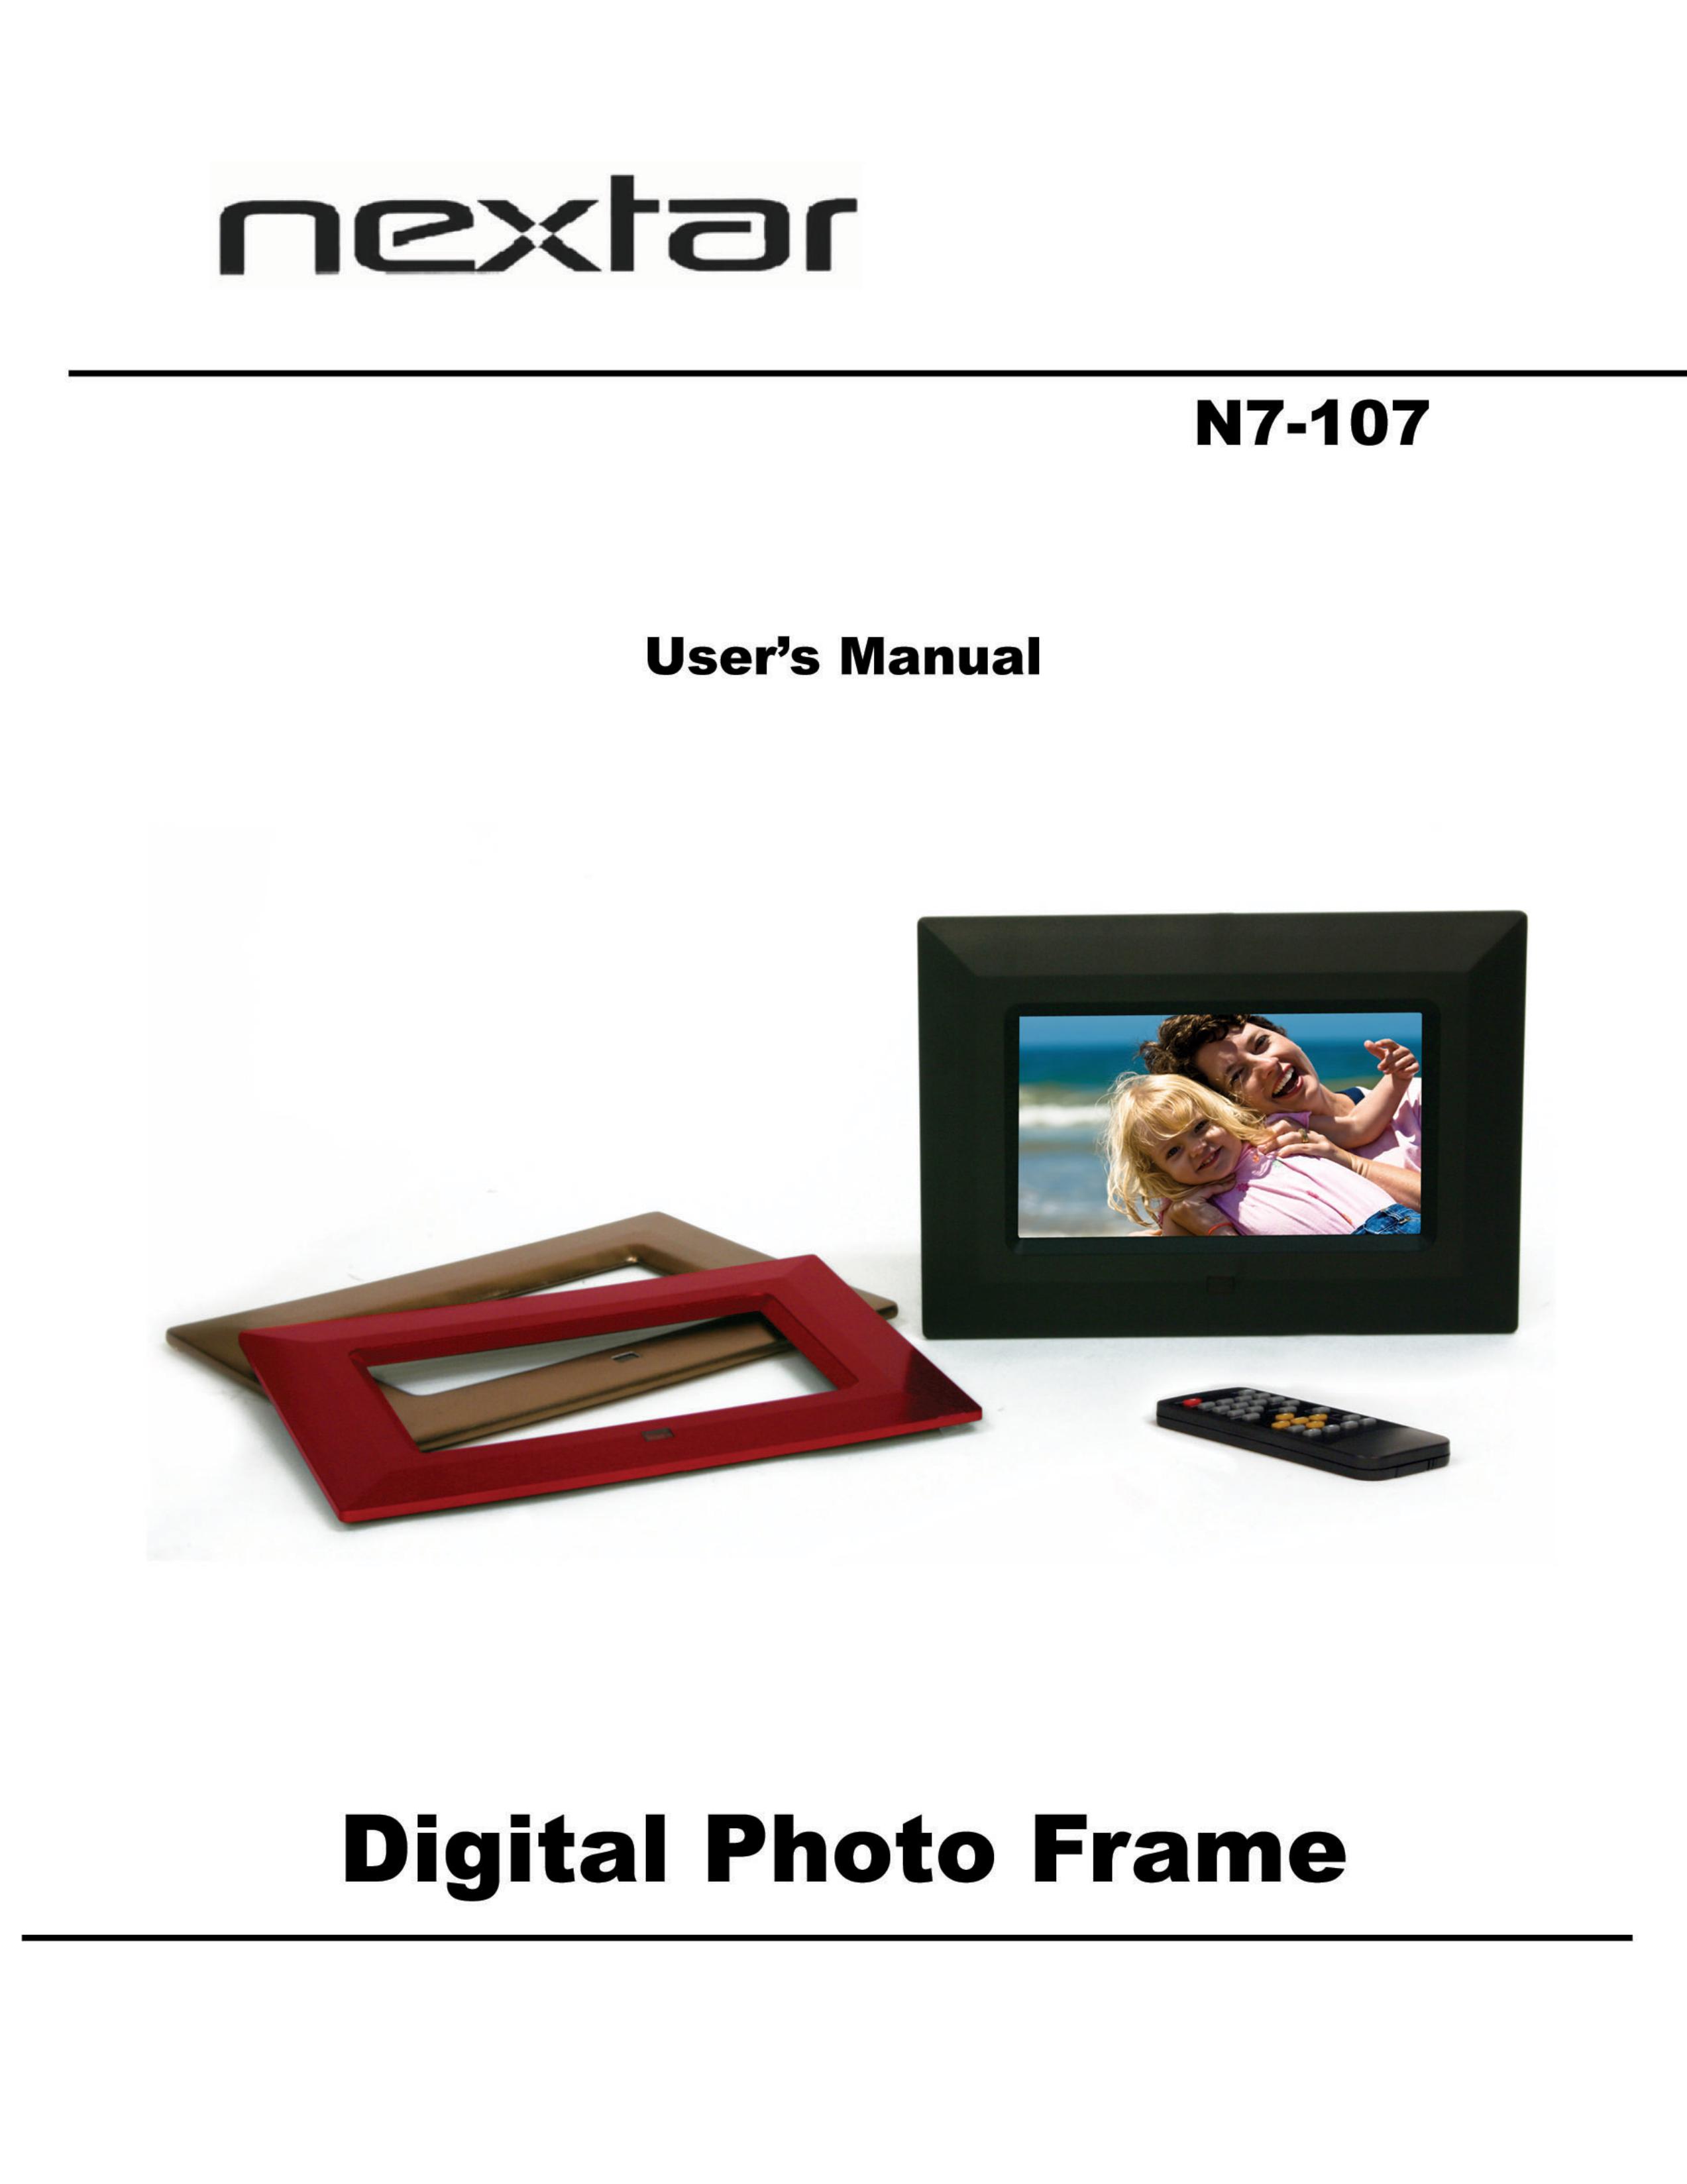 Nextar N7-107 Digital Photo Frame User Manual